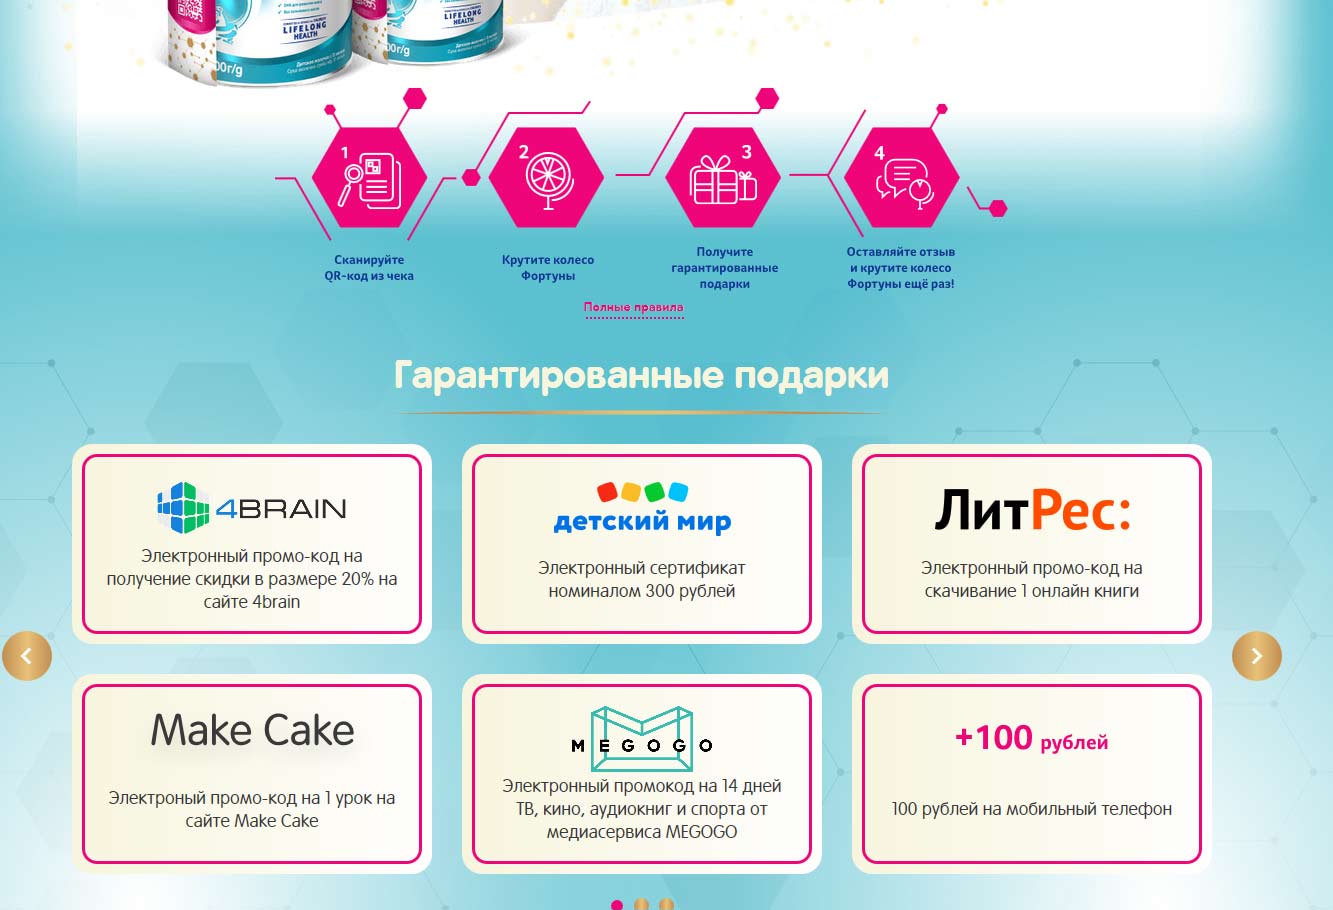 Акция www.nestlebaby.ru/nan3promo Nan и Детский мир:  с 26 апреля по 26 июня 2021